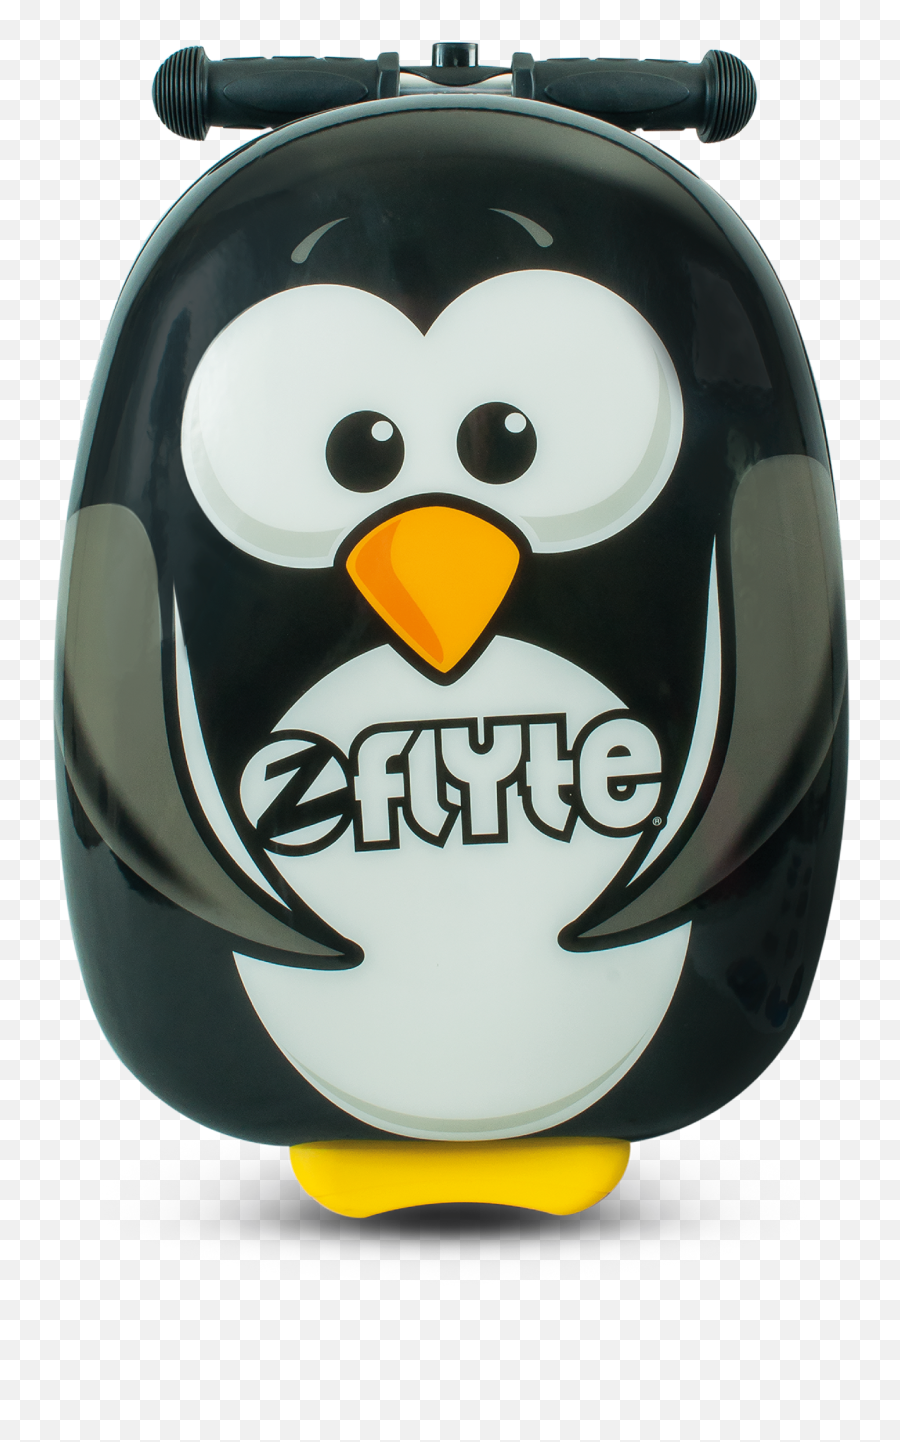 Flyte Kids 18 Inch Travel Scootersuitcase - Penguin Suitcase Emoji,Facebook Emoticons Shark Penguin